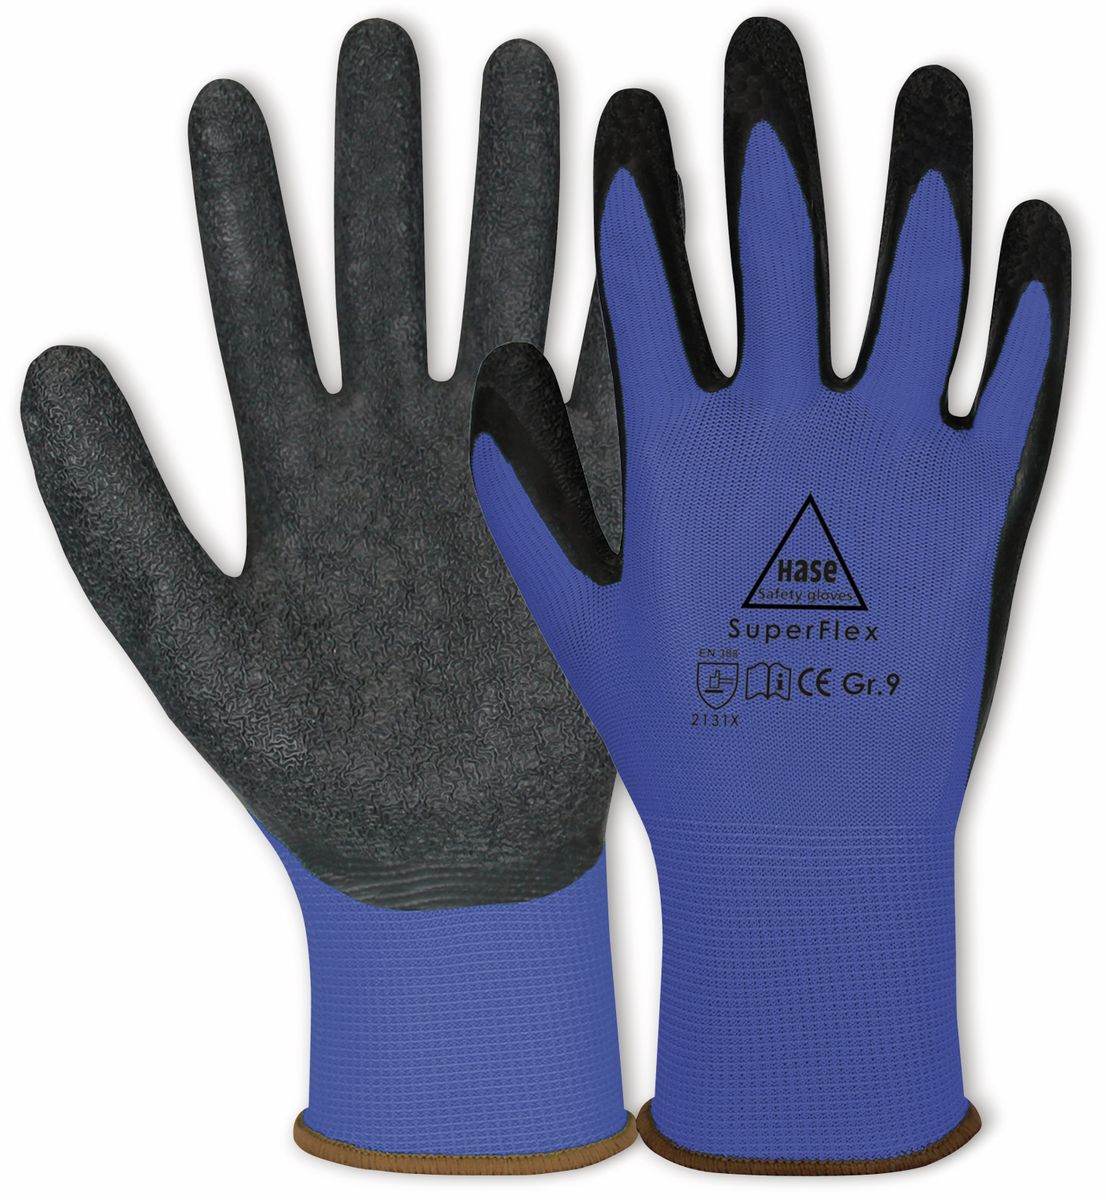 HASE SAFETY GLOVES Latex-Arbeitshandschuhe Superflex, EN 388, EN 420, Größe 8, blau/schwarz von Hase Safety gloves